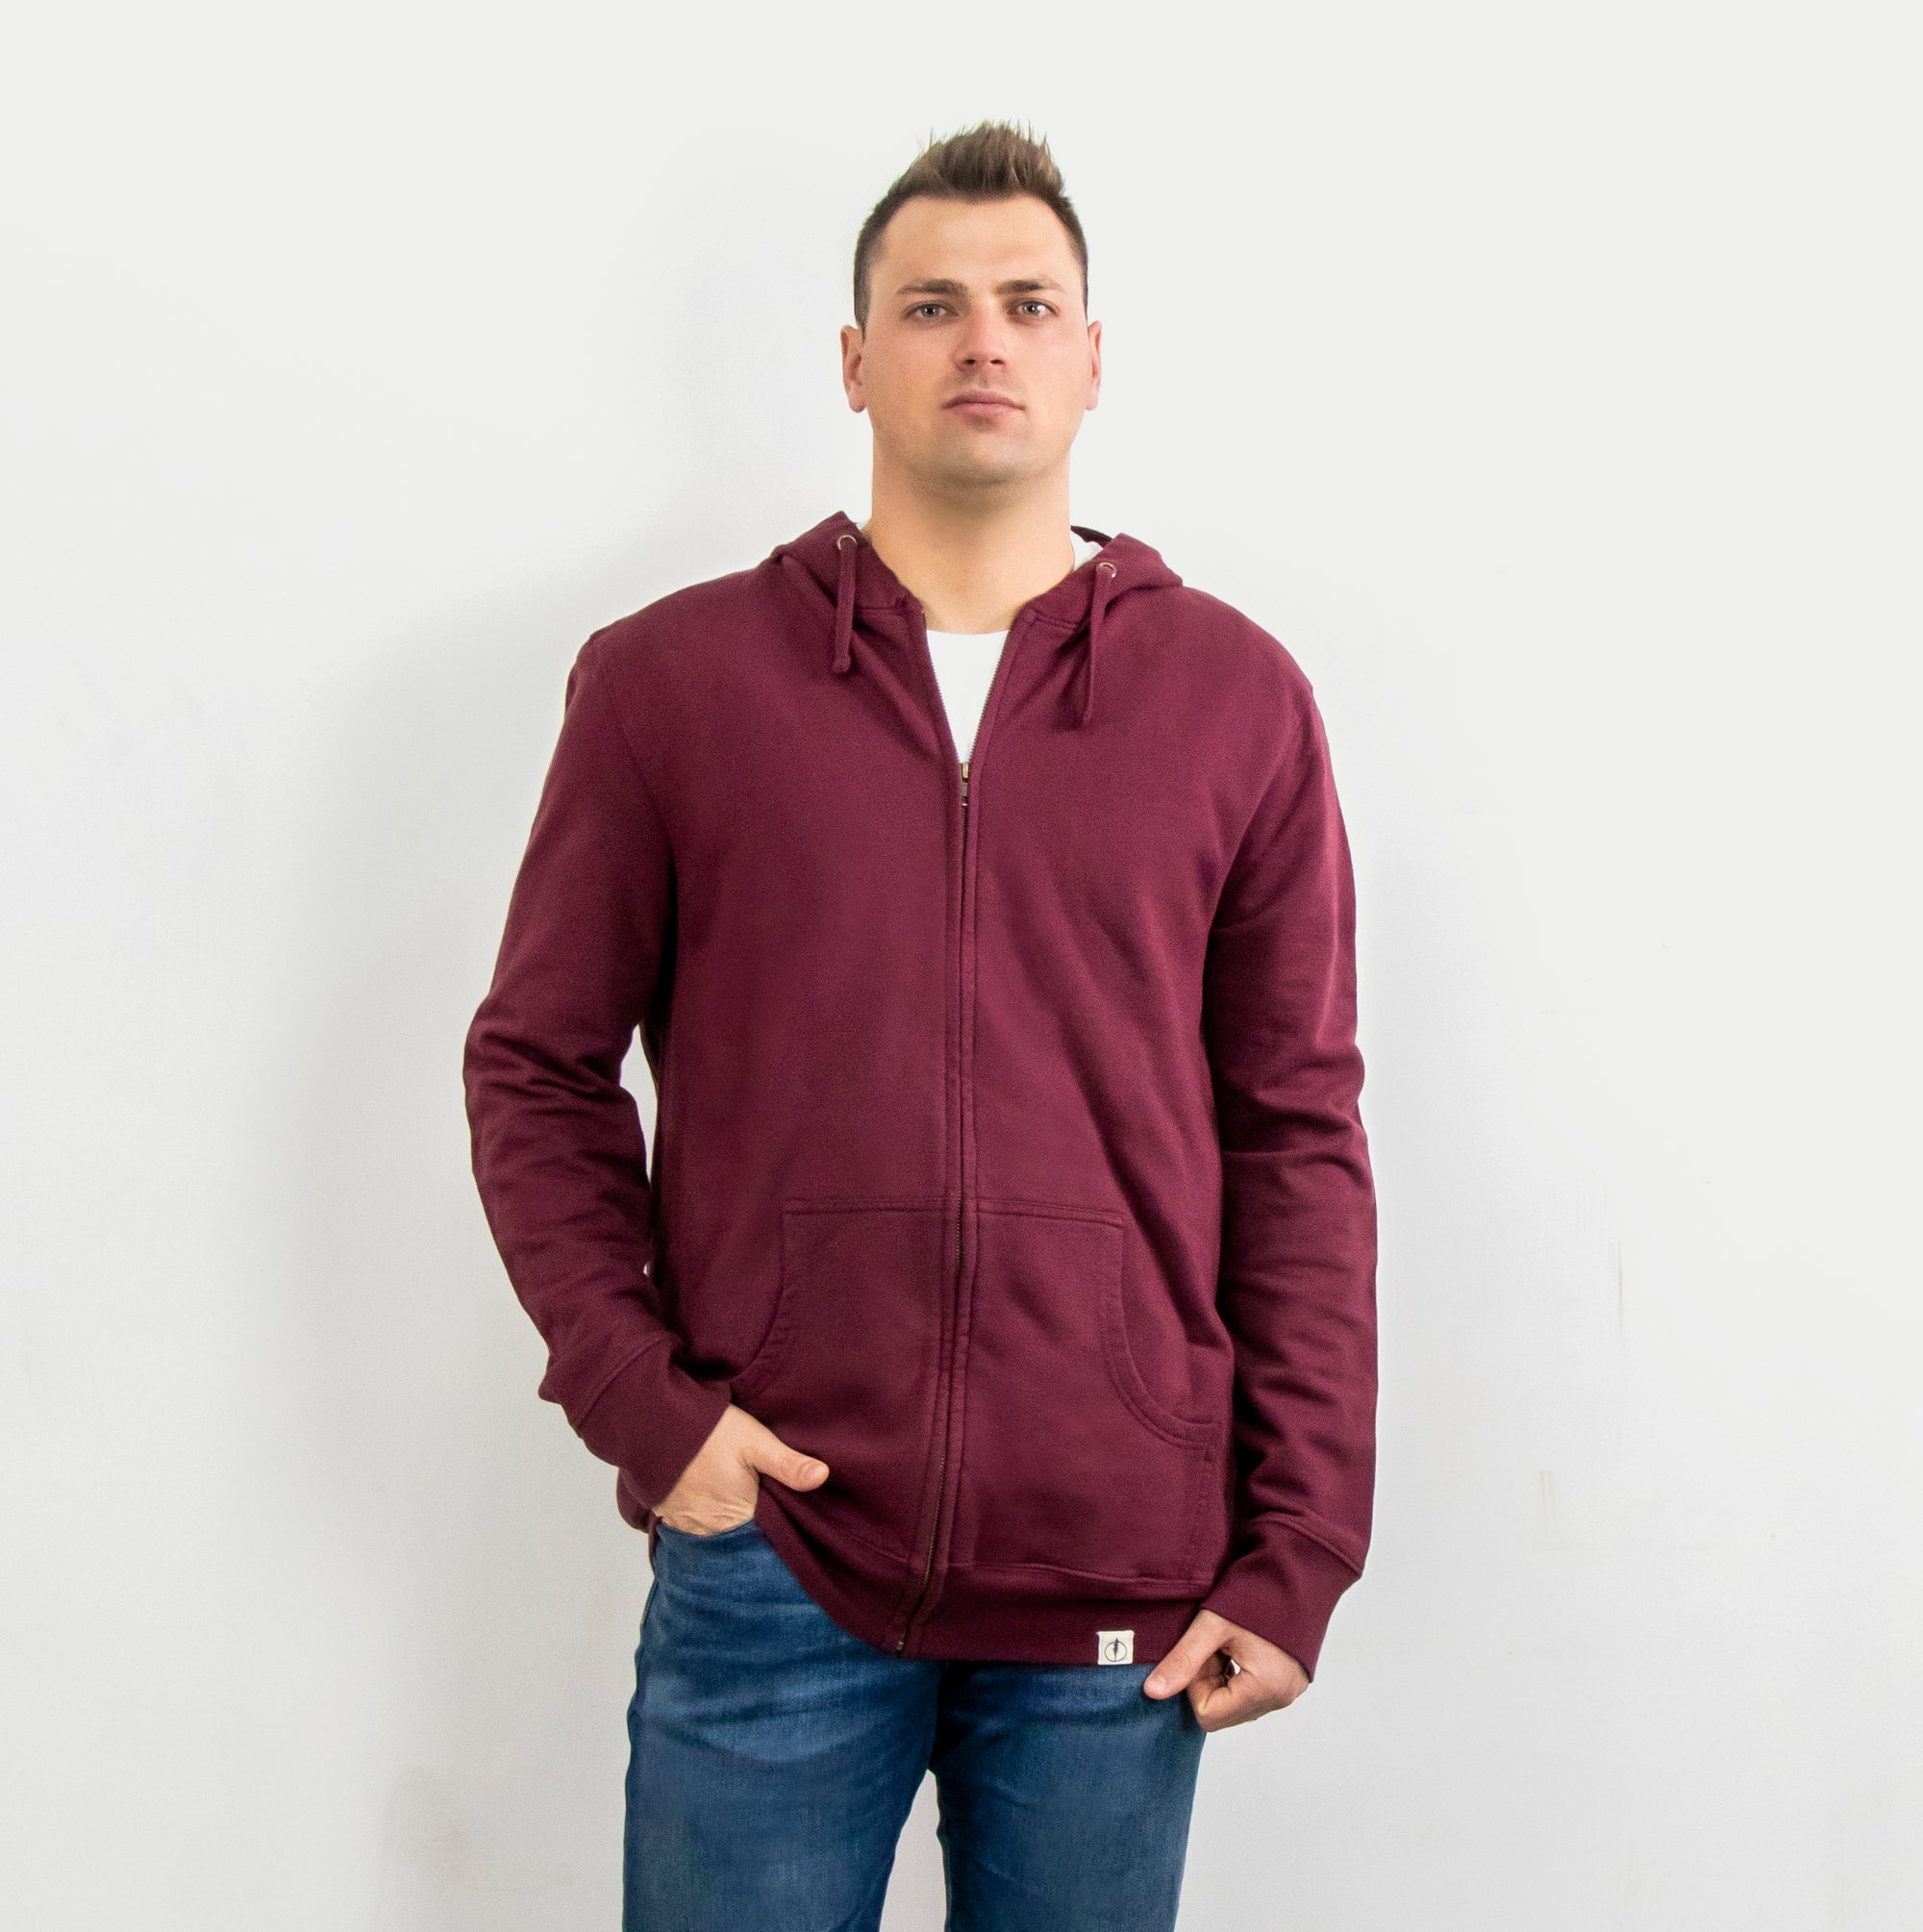 Men's Big & Tall Hoodies, Sweatshirts & Zip-Ups